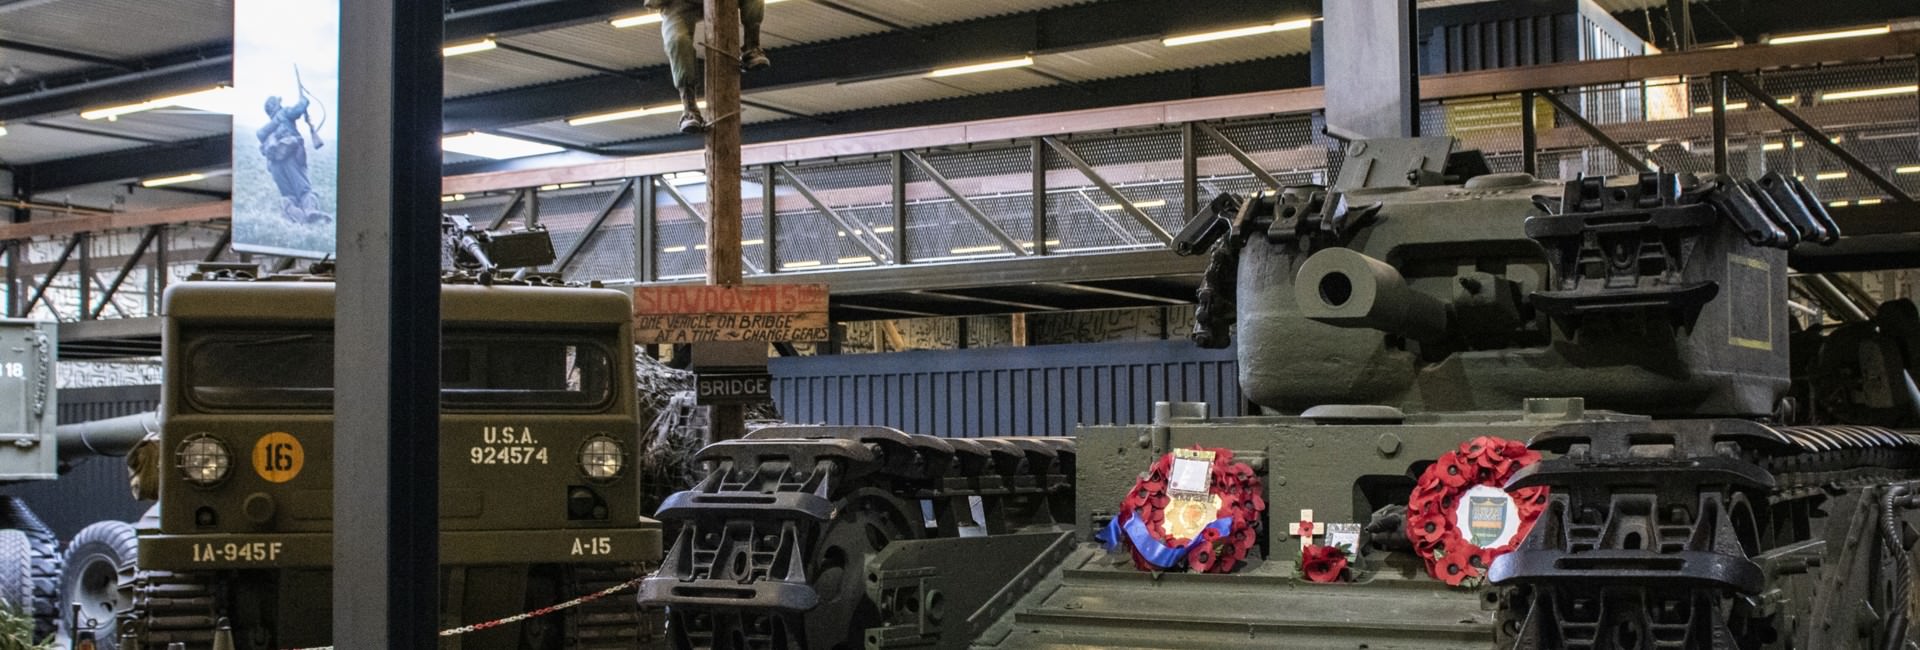 oorlogsmuseum - Collectie militair materieel